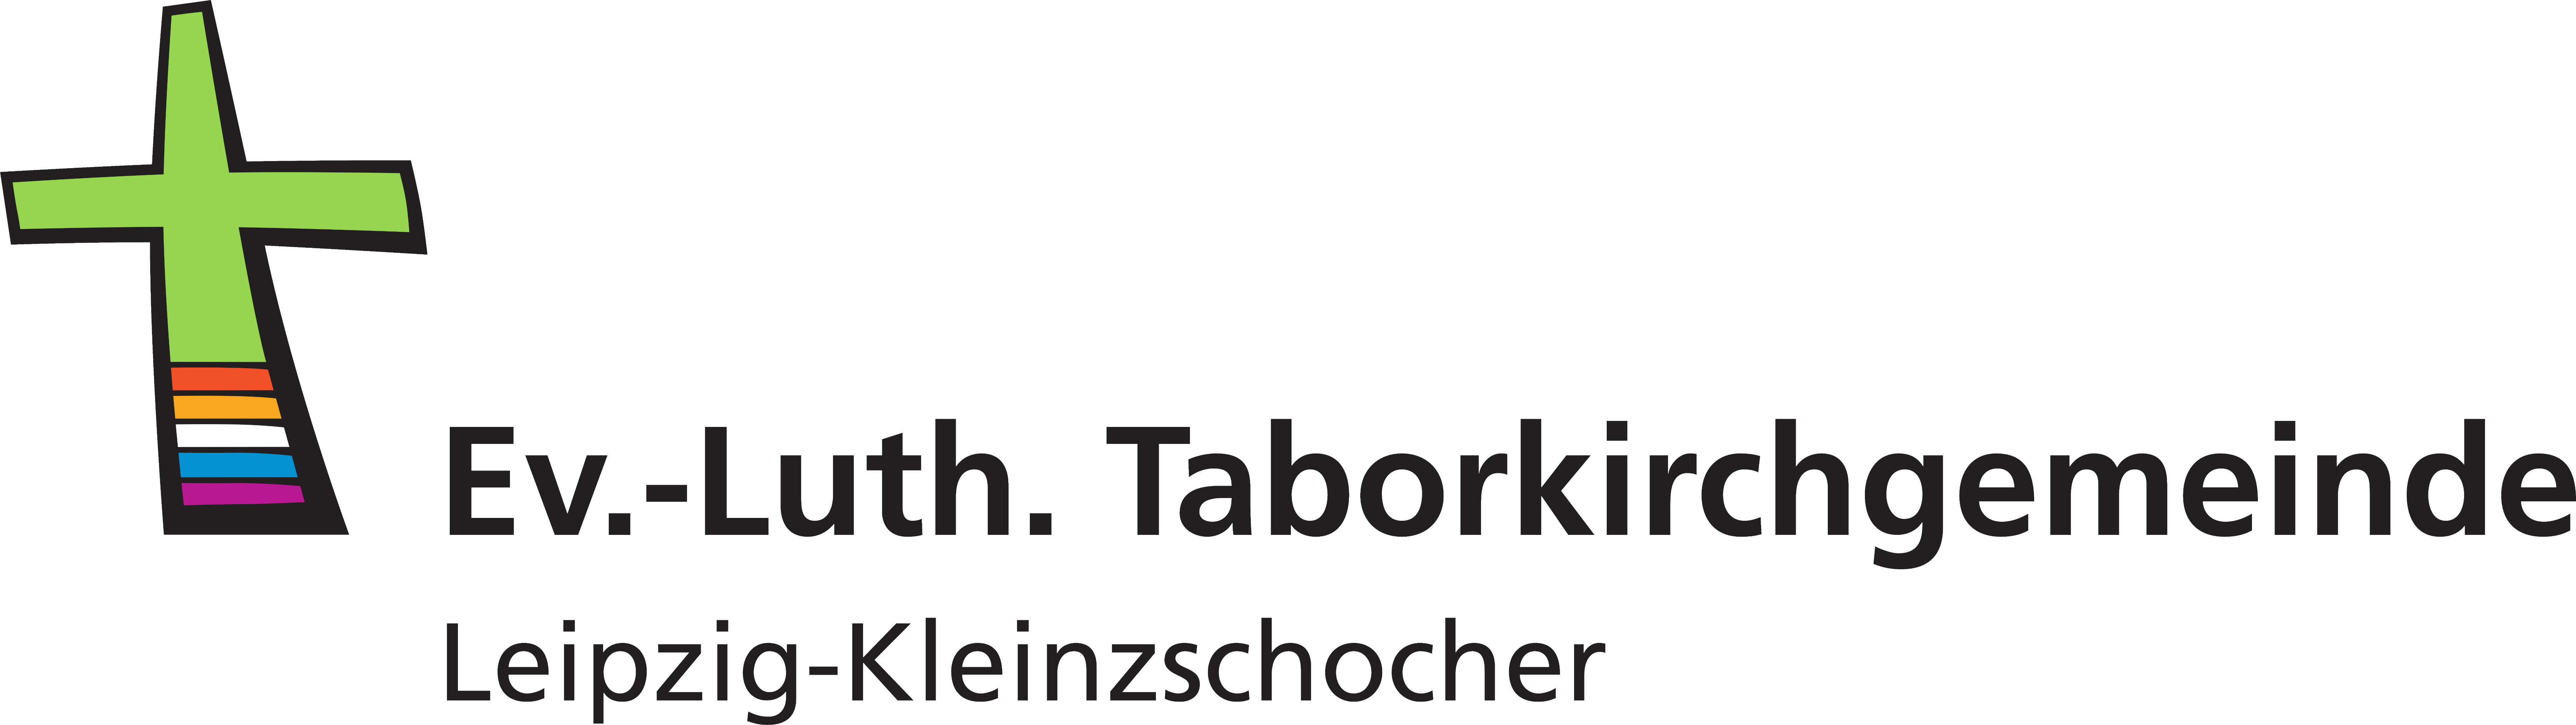 www.Taborkirche.de